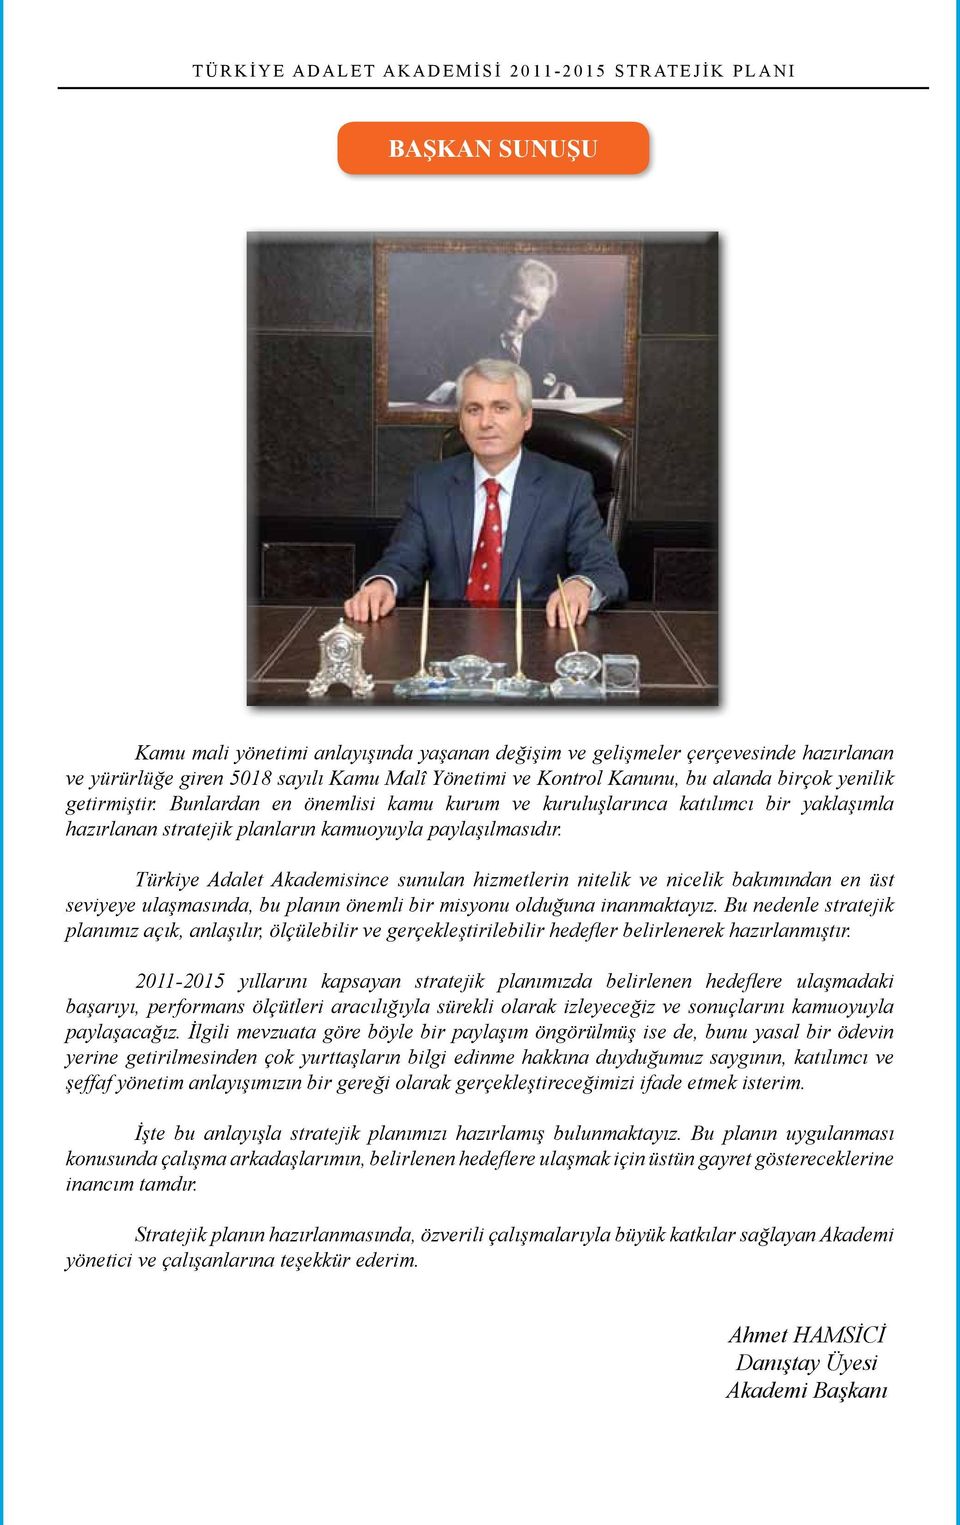 Türkiye Adalet Akademisince sunulan hizmetlerin nitelik ve nicelik bakımından en üst seviyeye ulaşmasında, bu planın önemli bir misyonu olduğuna inanmaktayız.